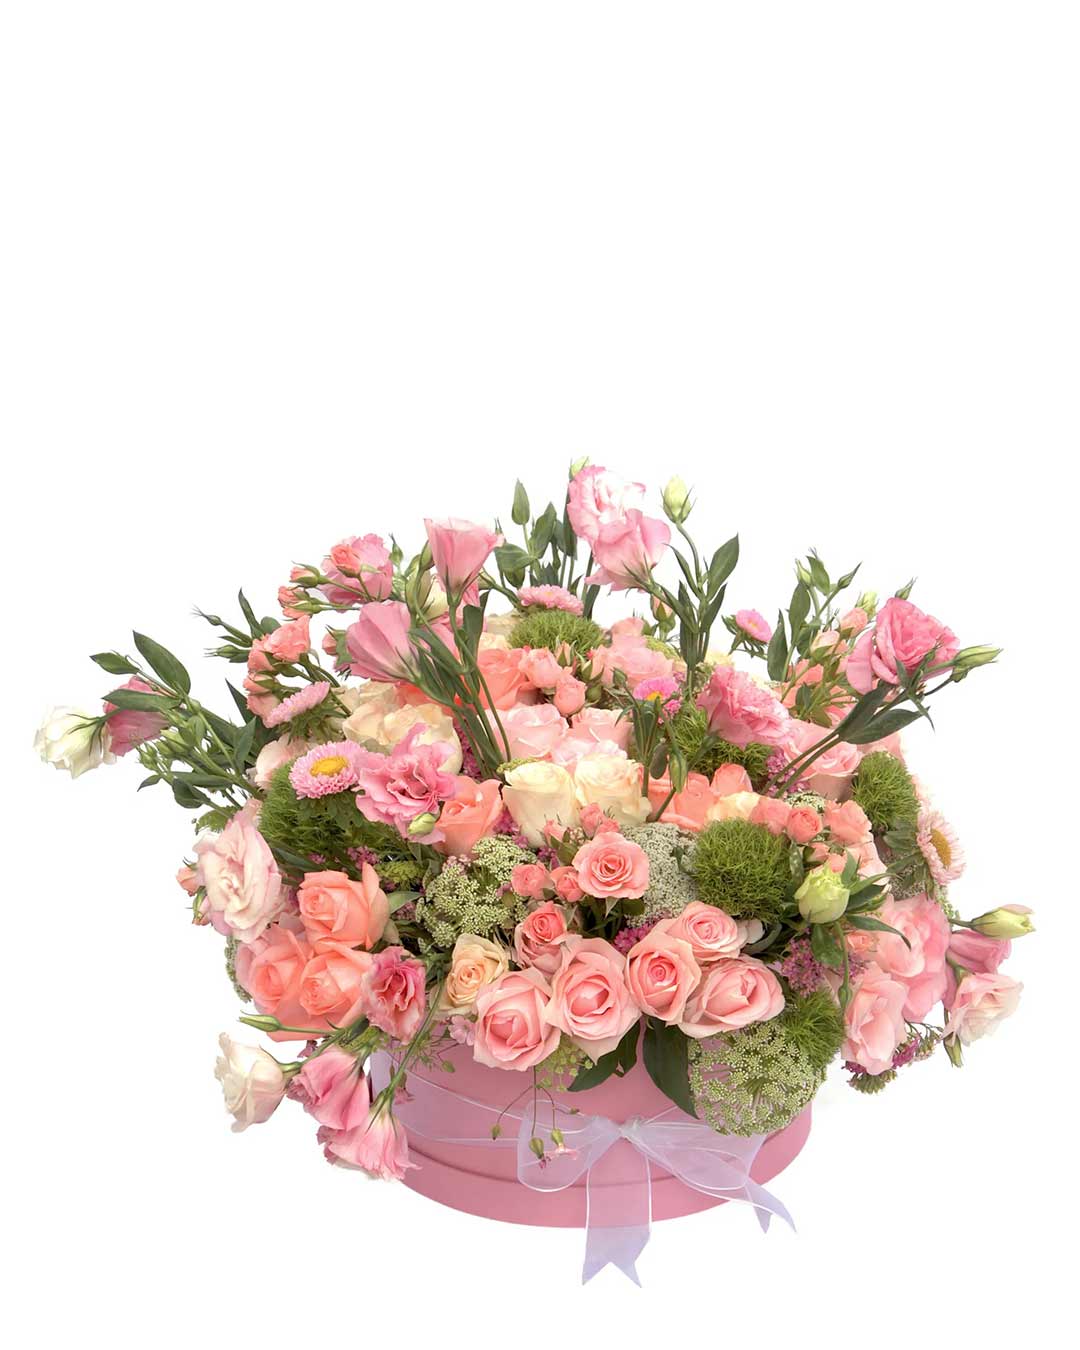 Arreglo de flores naturales con rosas en color rosado, lisianthus, greens y follaje en una caja redonda rosa.